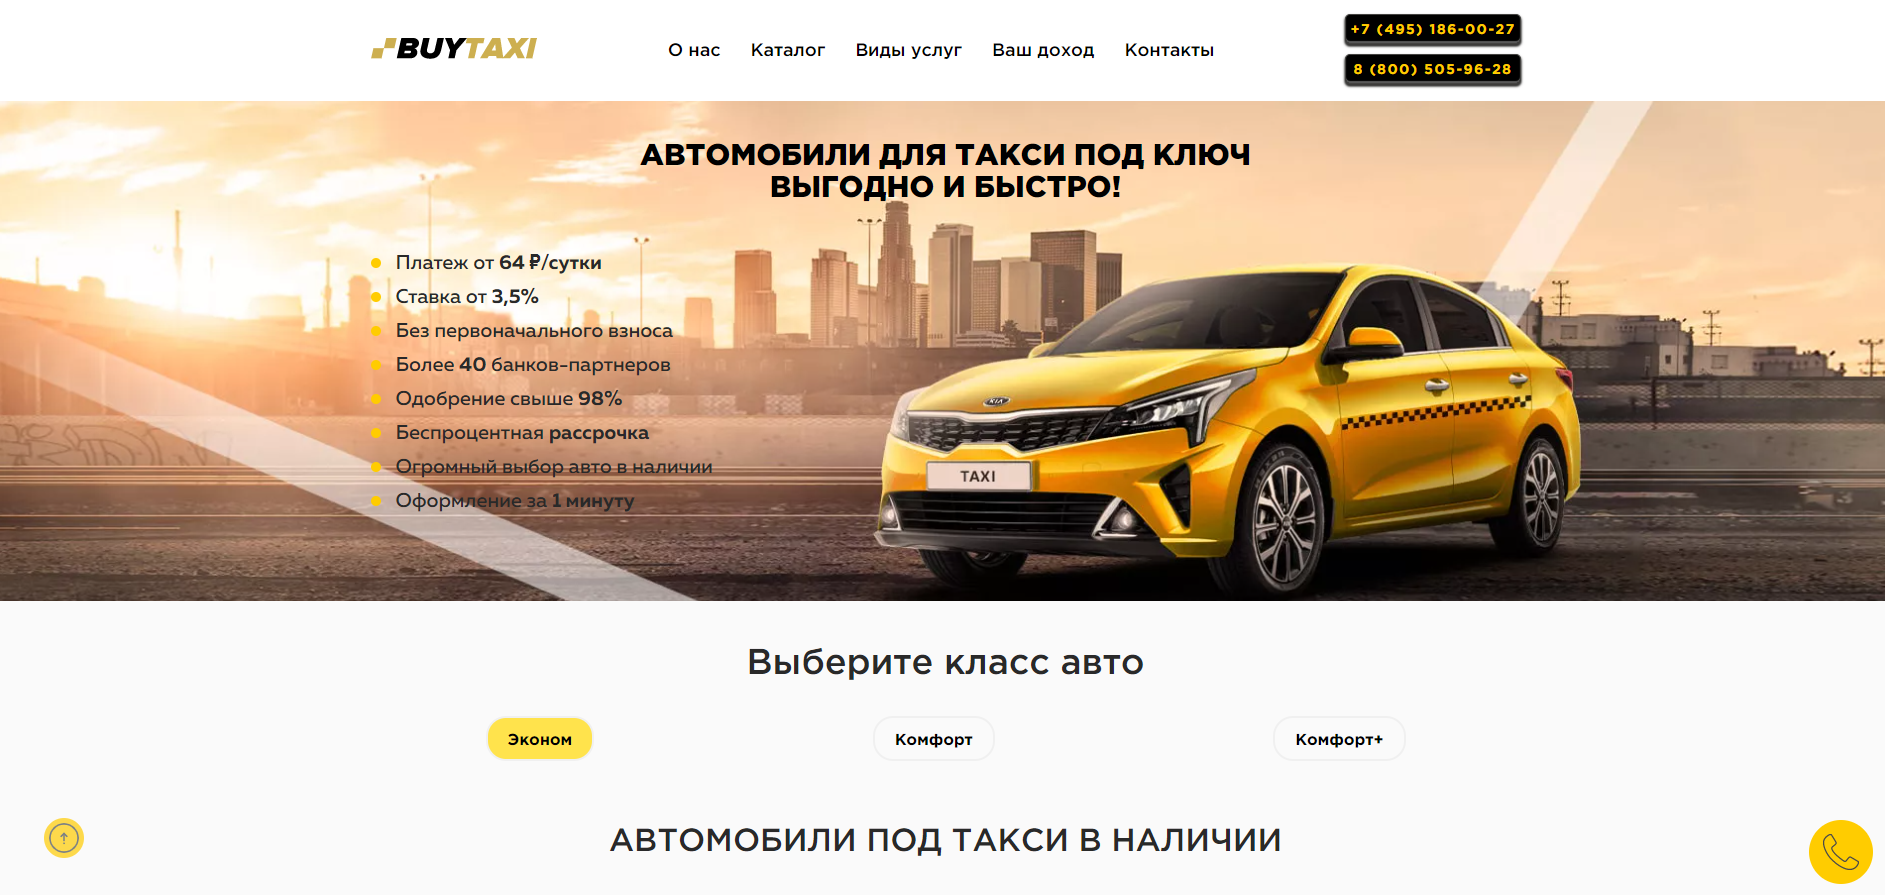 Автосалон BUYTAXI: информация, отзывы покупателей и рейтинг